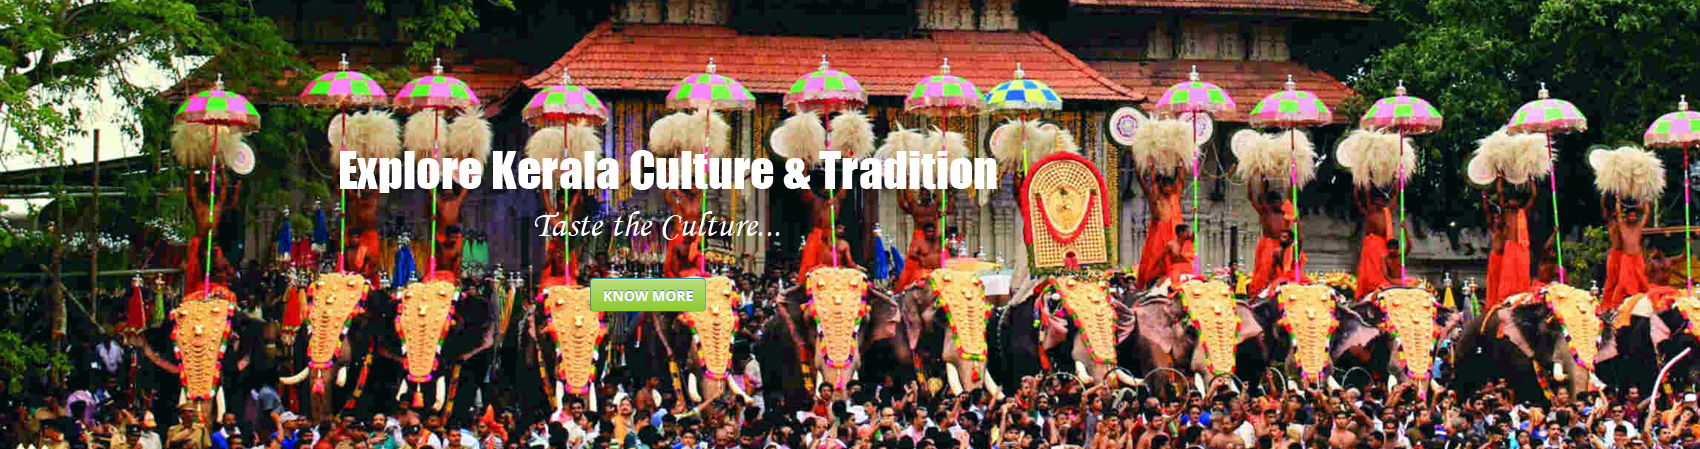 Explore Kerala Culture & Tradition